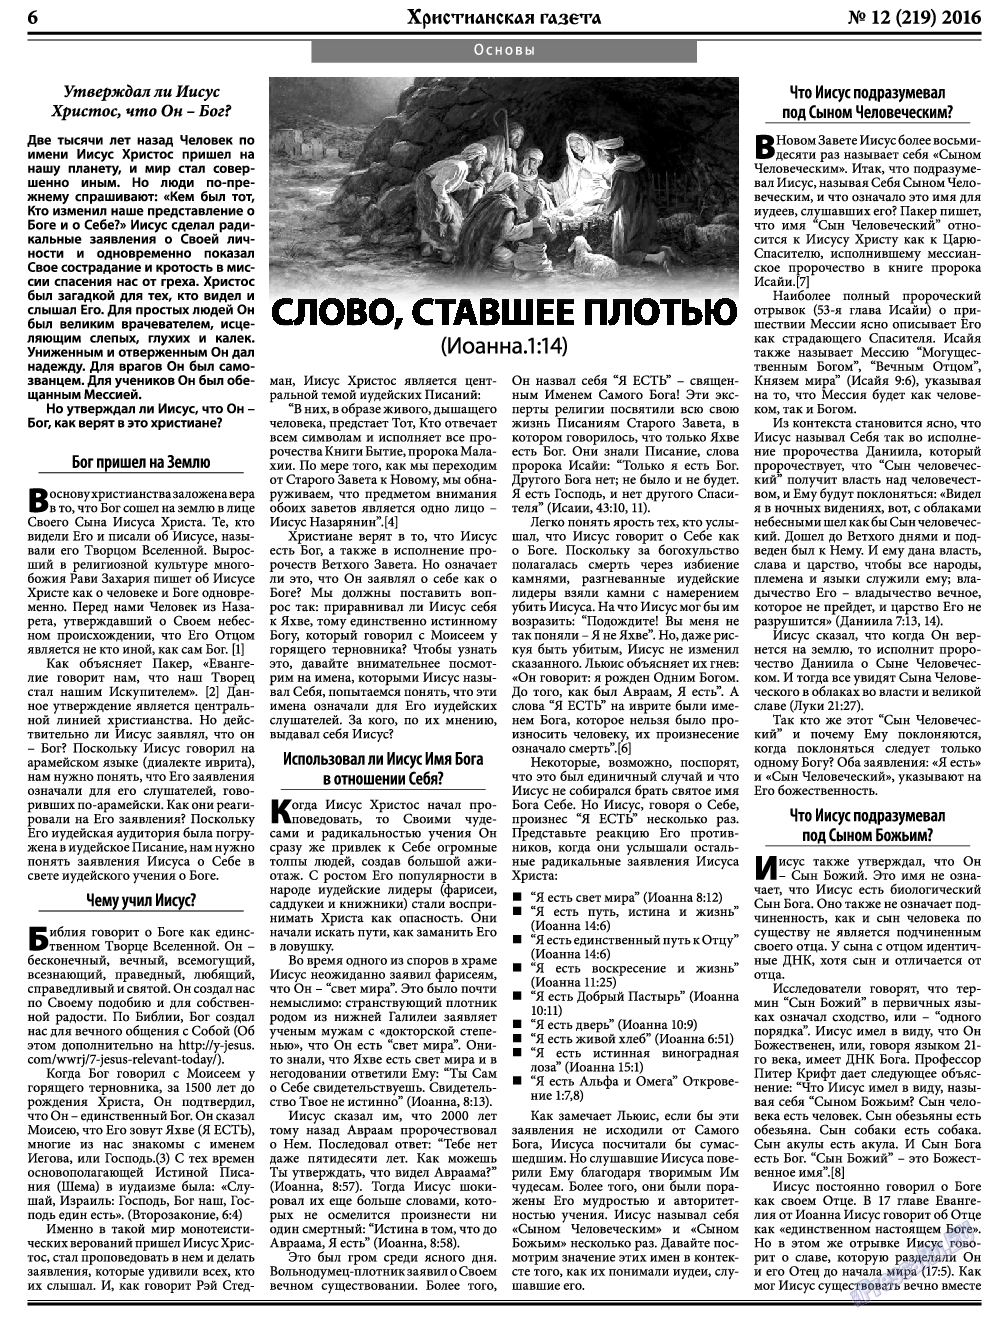 Христианская газета, газета. 2016 №12 стр.6